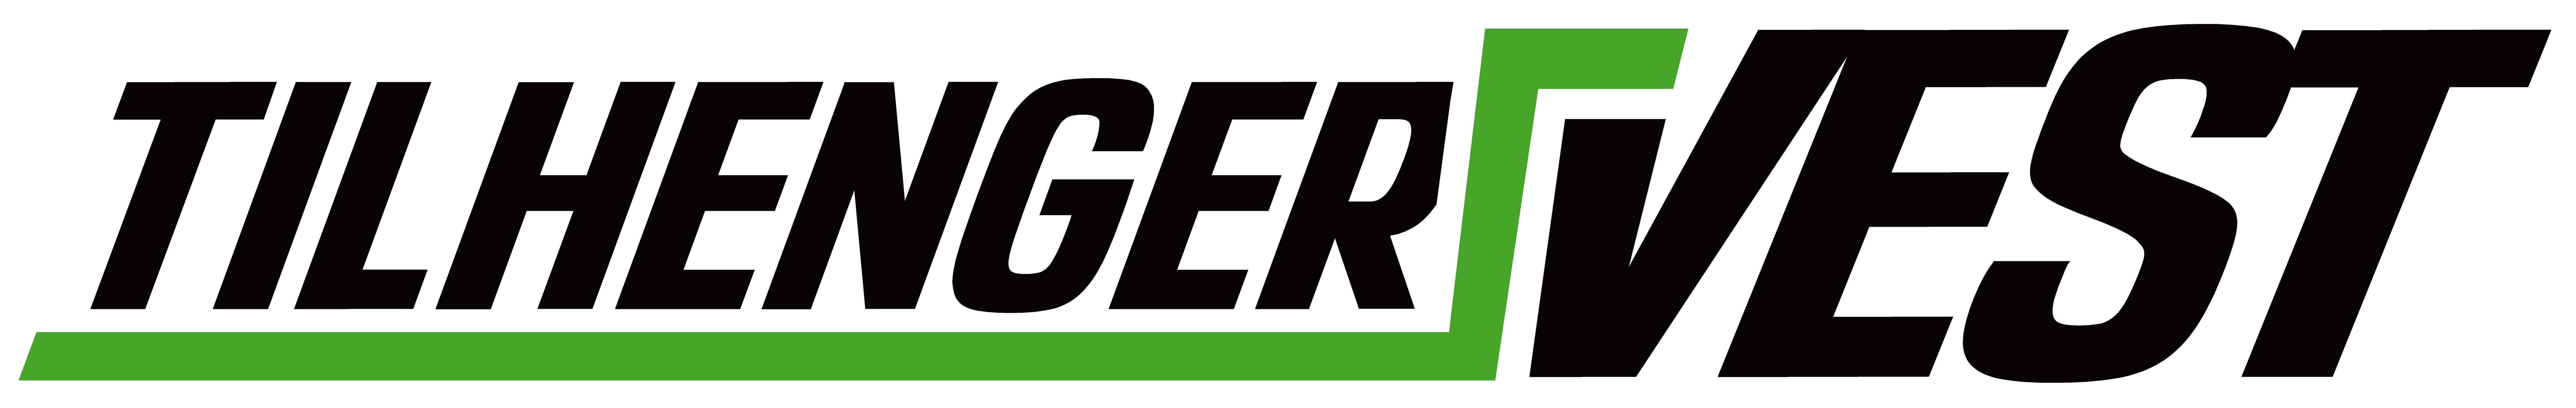 Logo av TilhengerVest